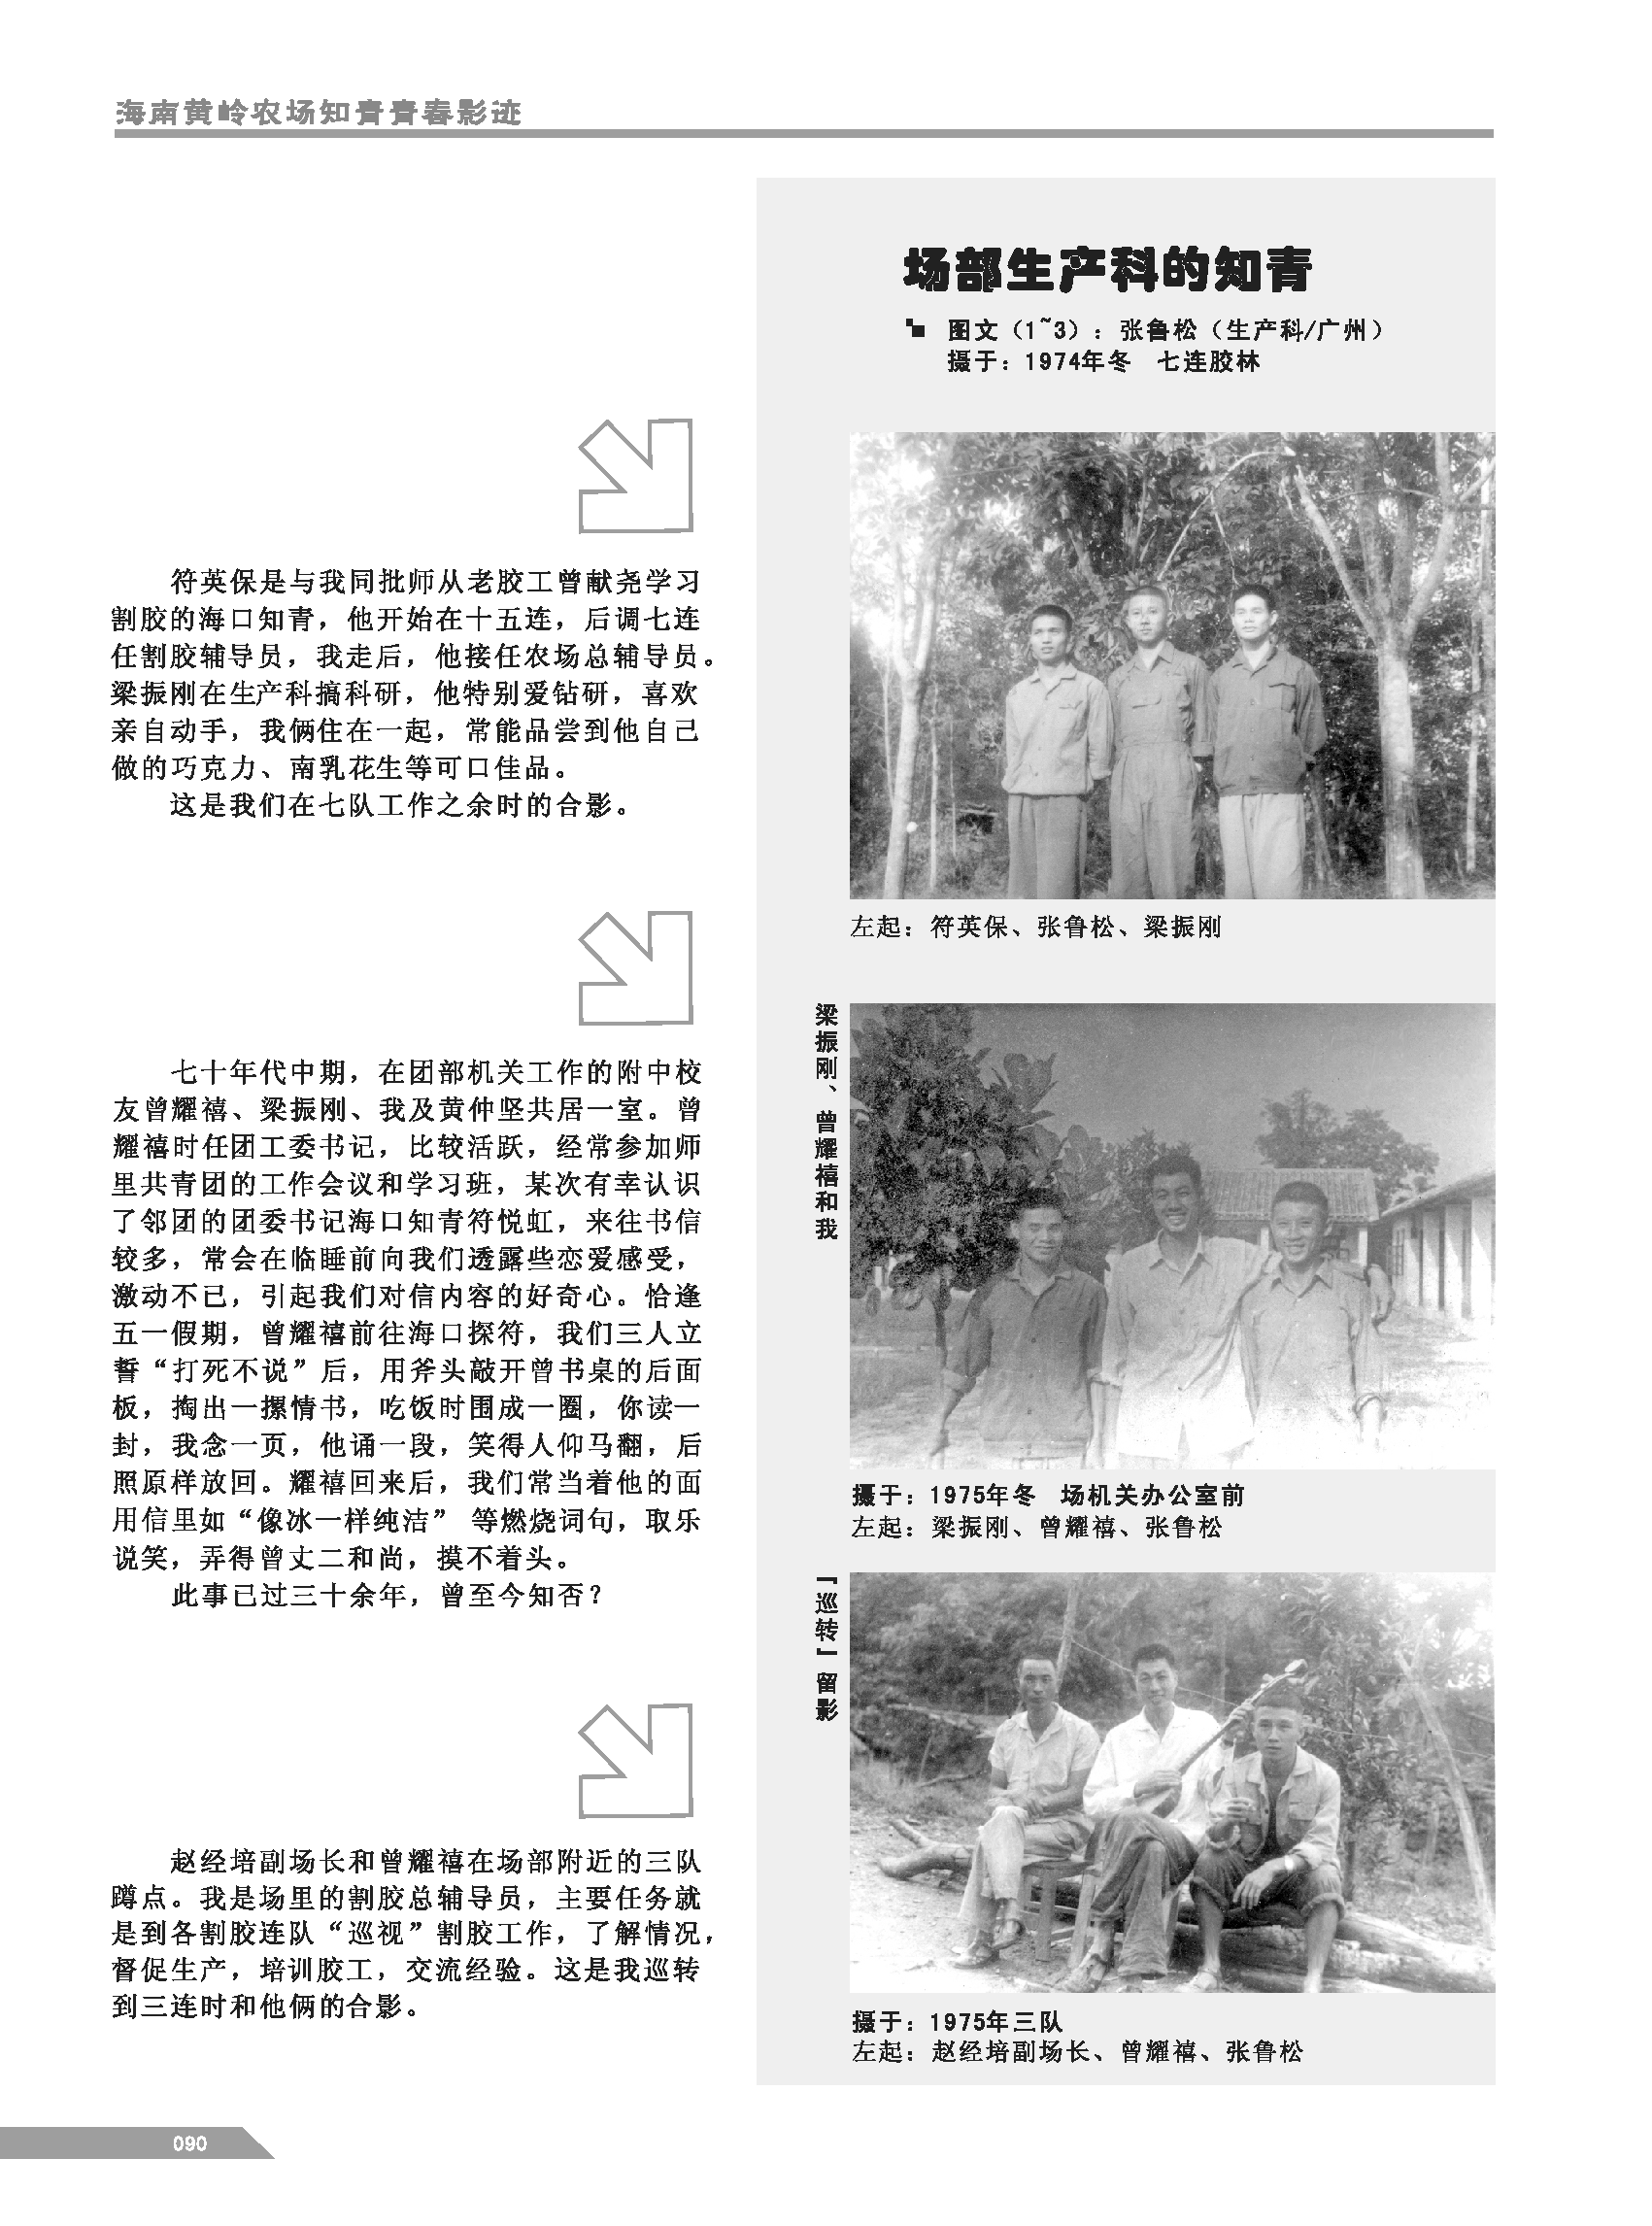 黄岭农场青春影踪内页90.png